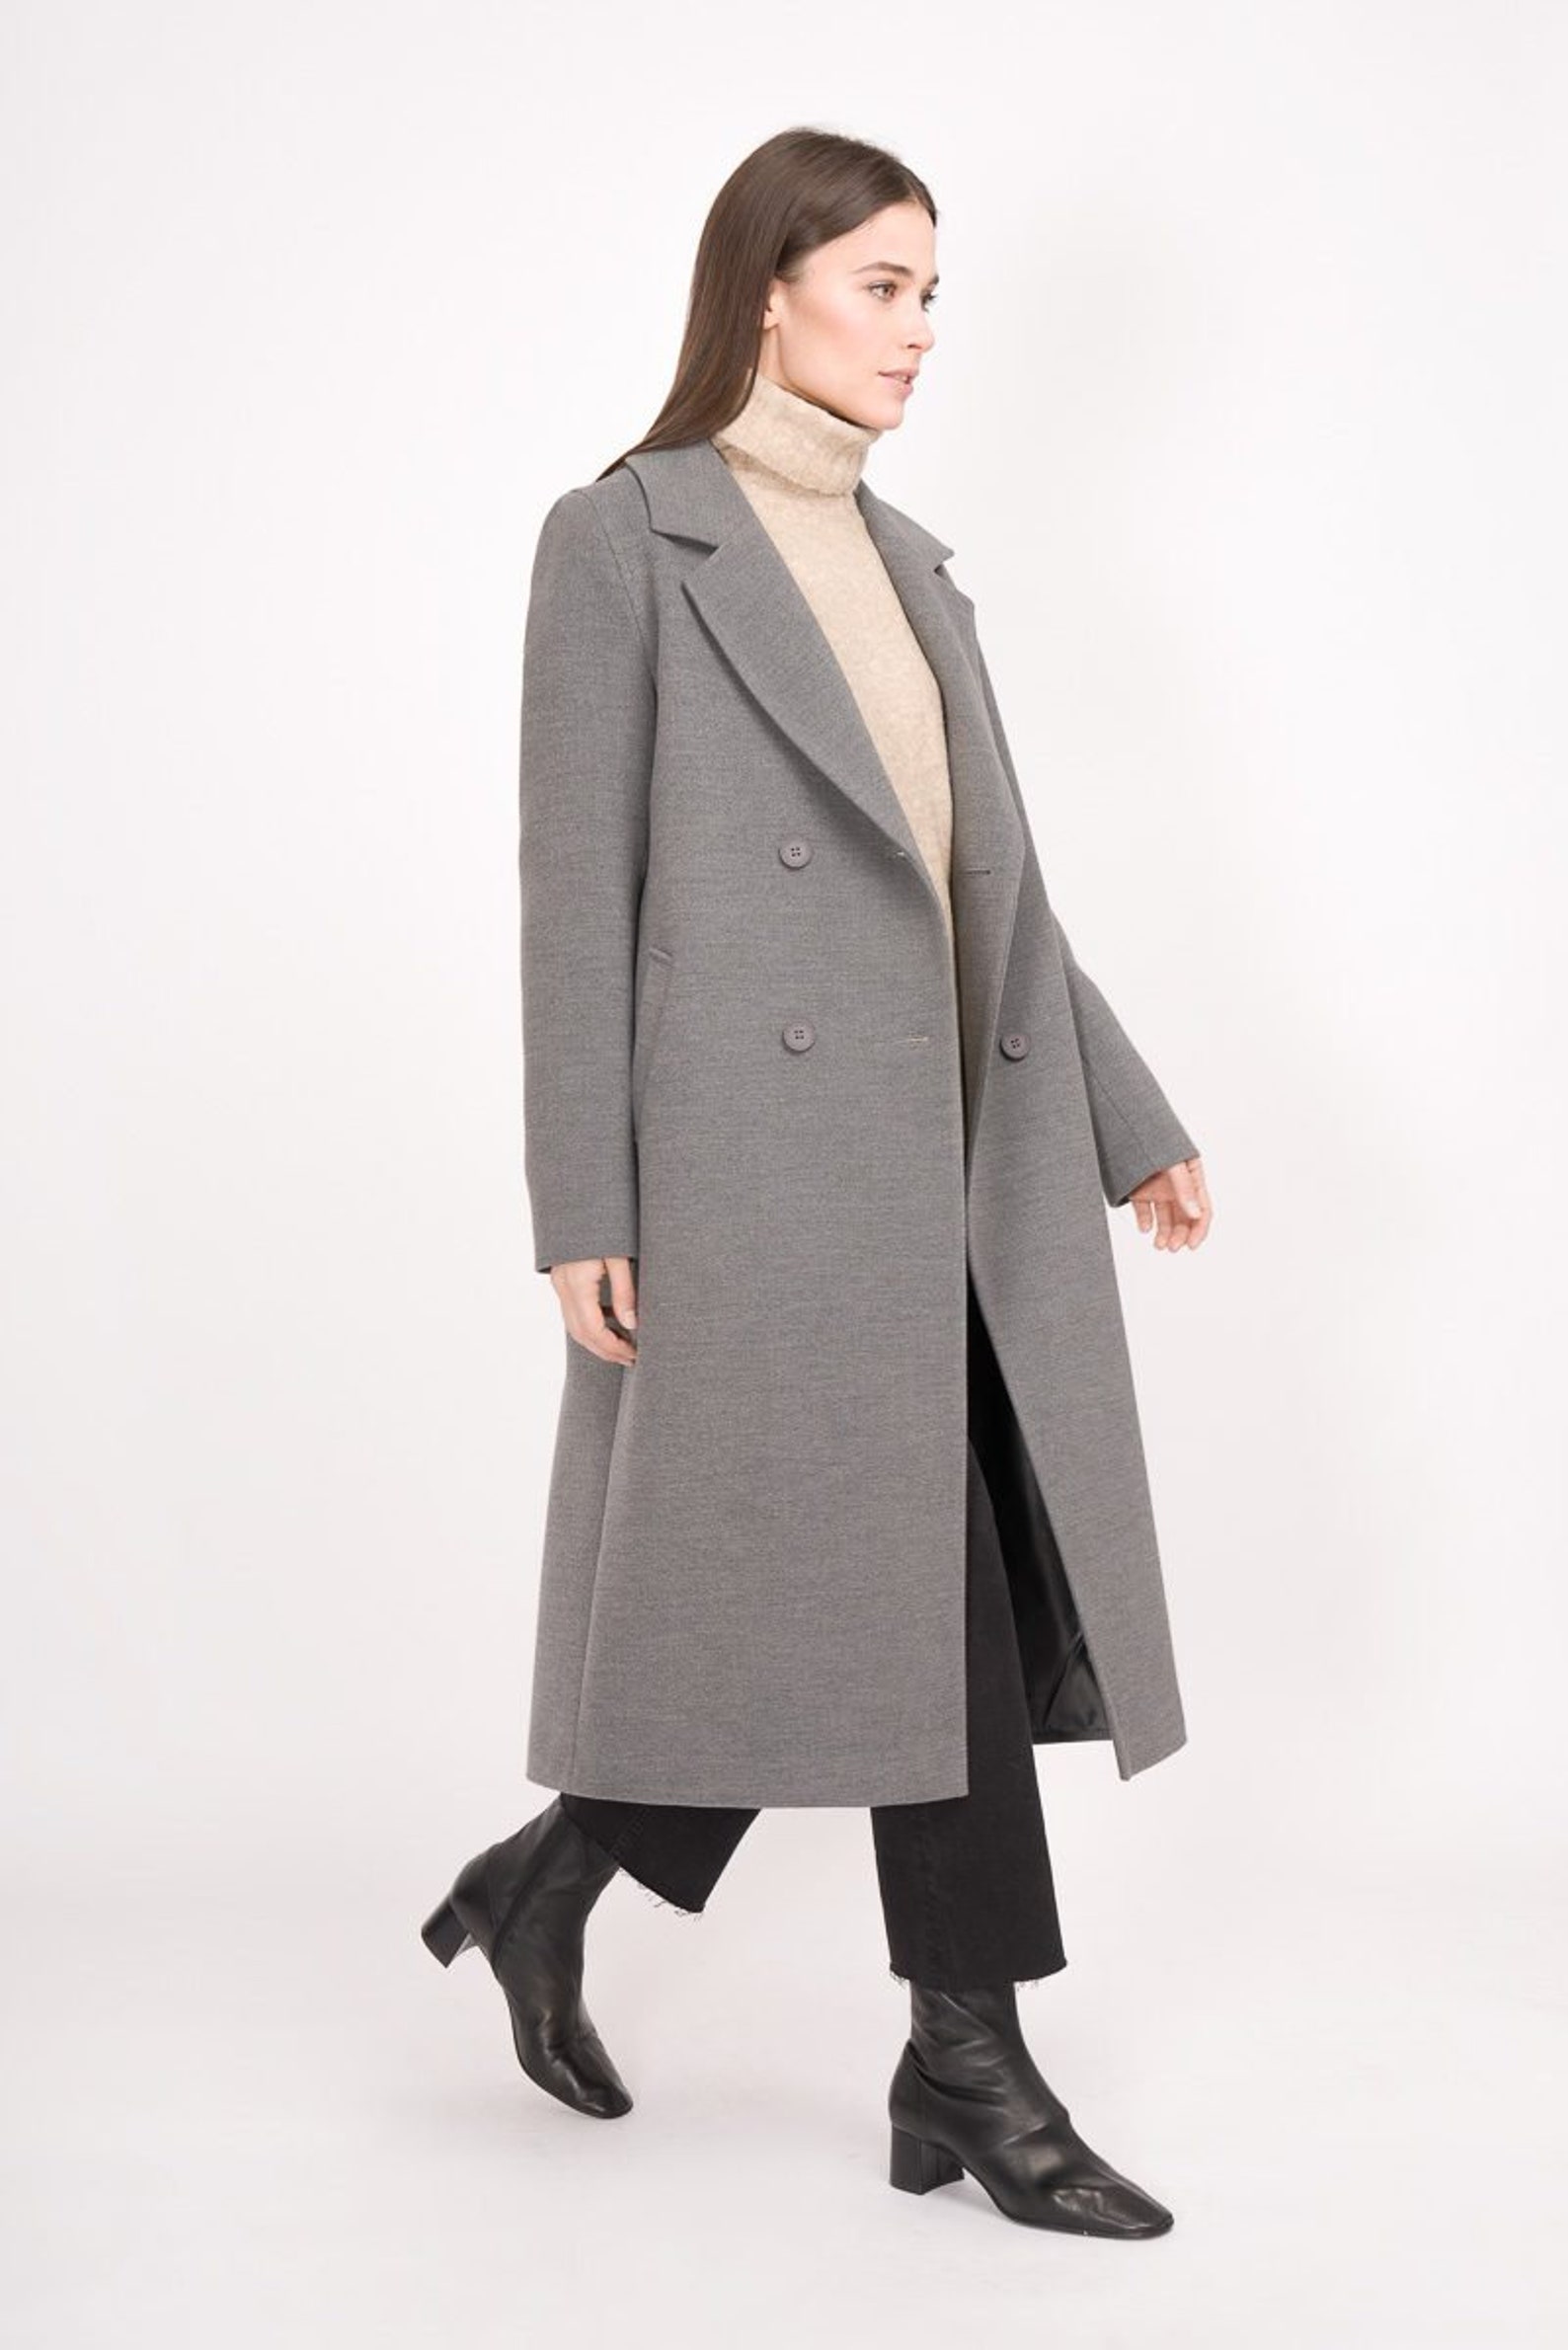 Longline wool coat jacket trench gray green women trendy | Etsy